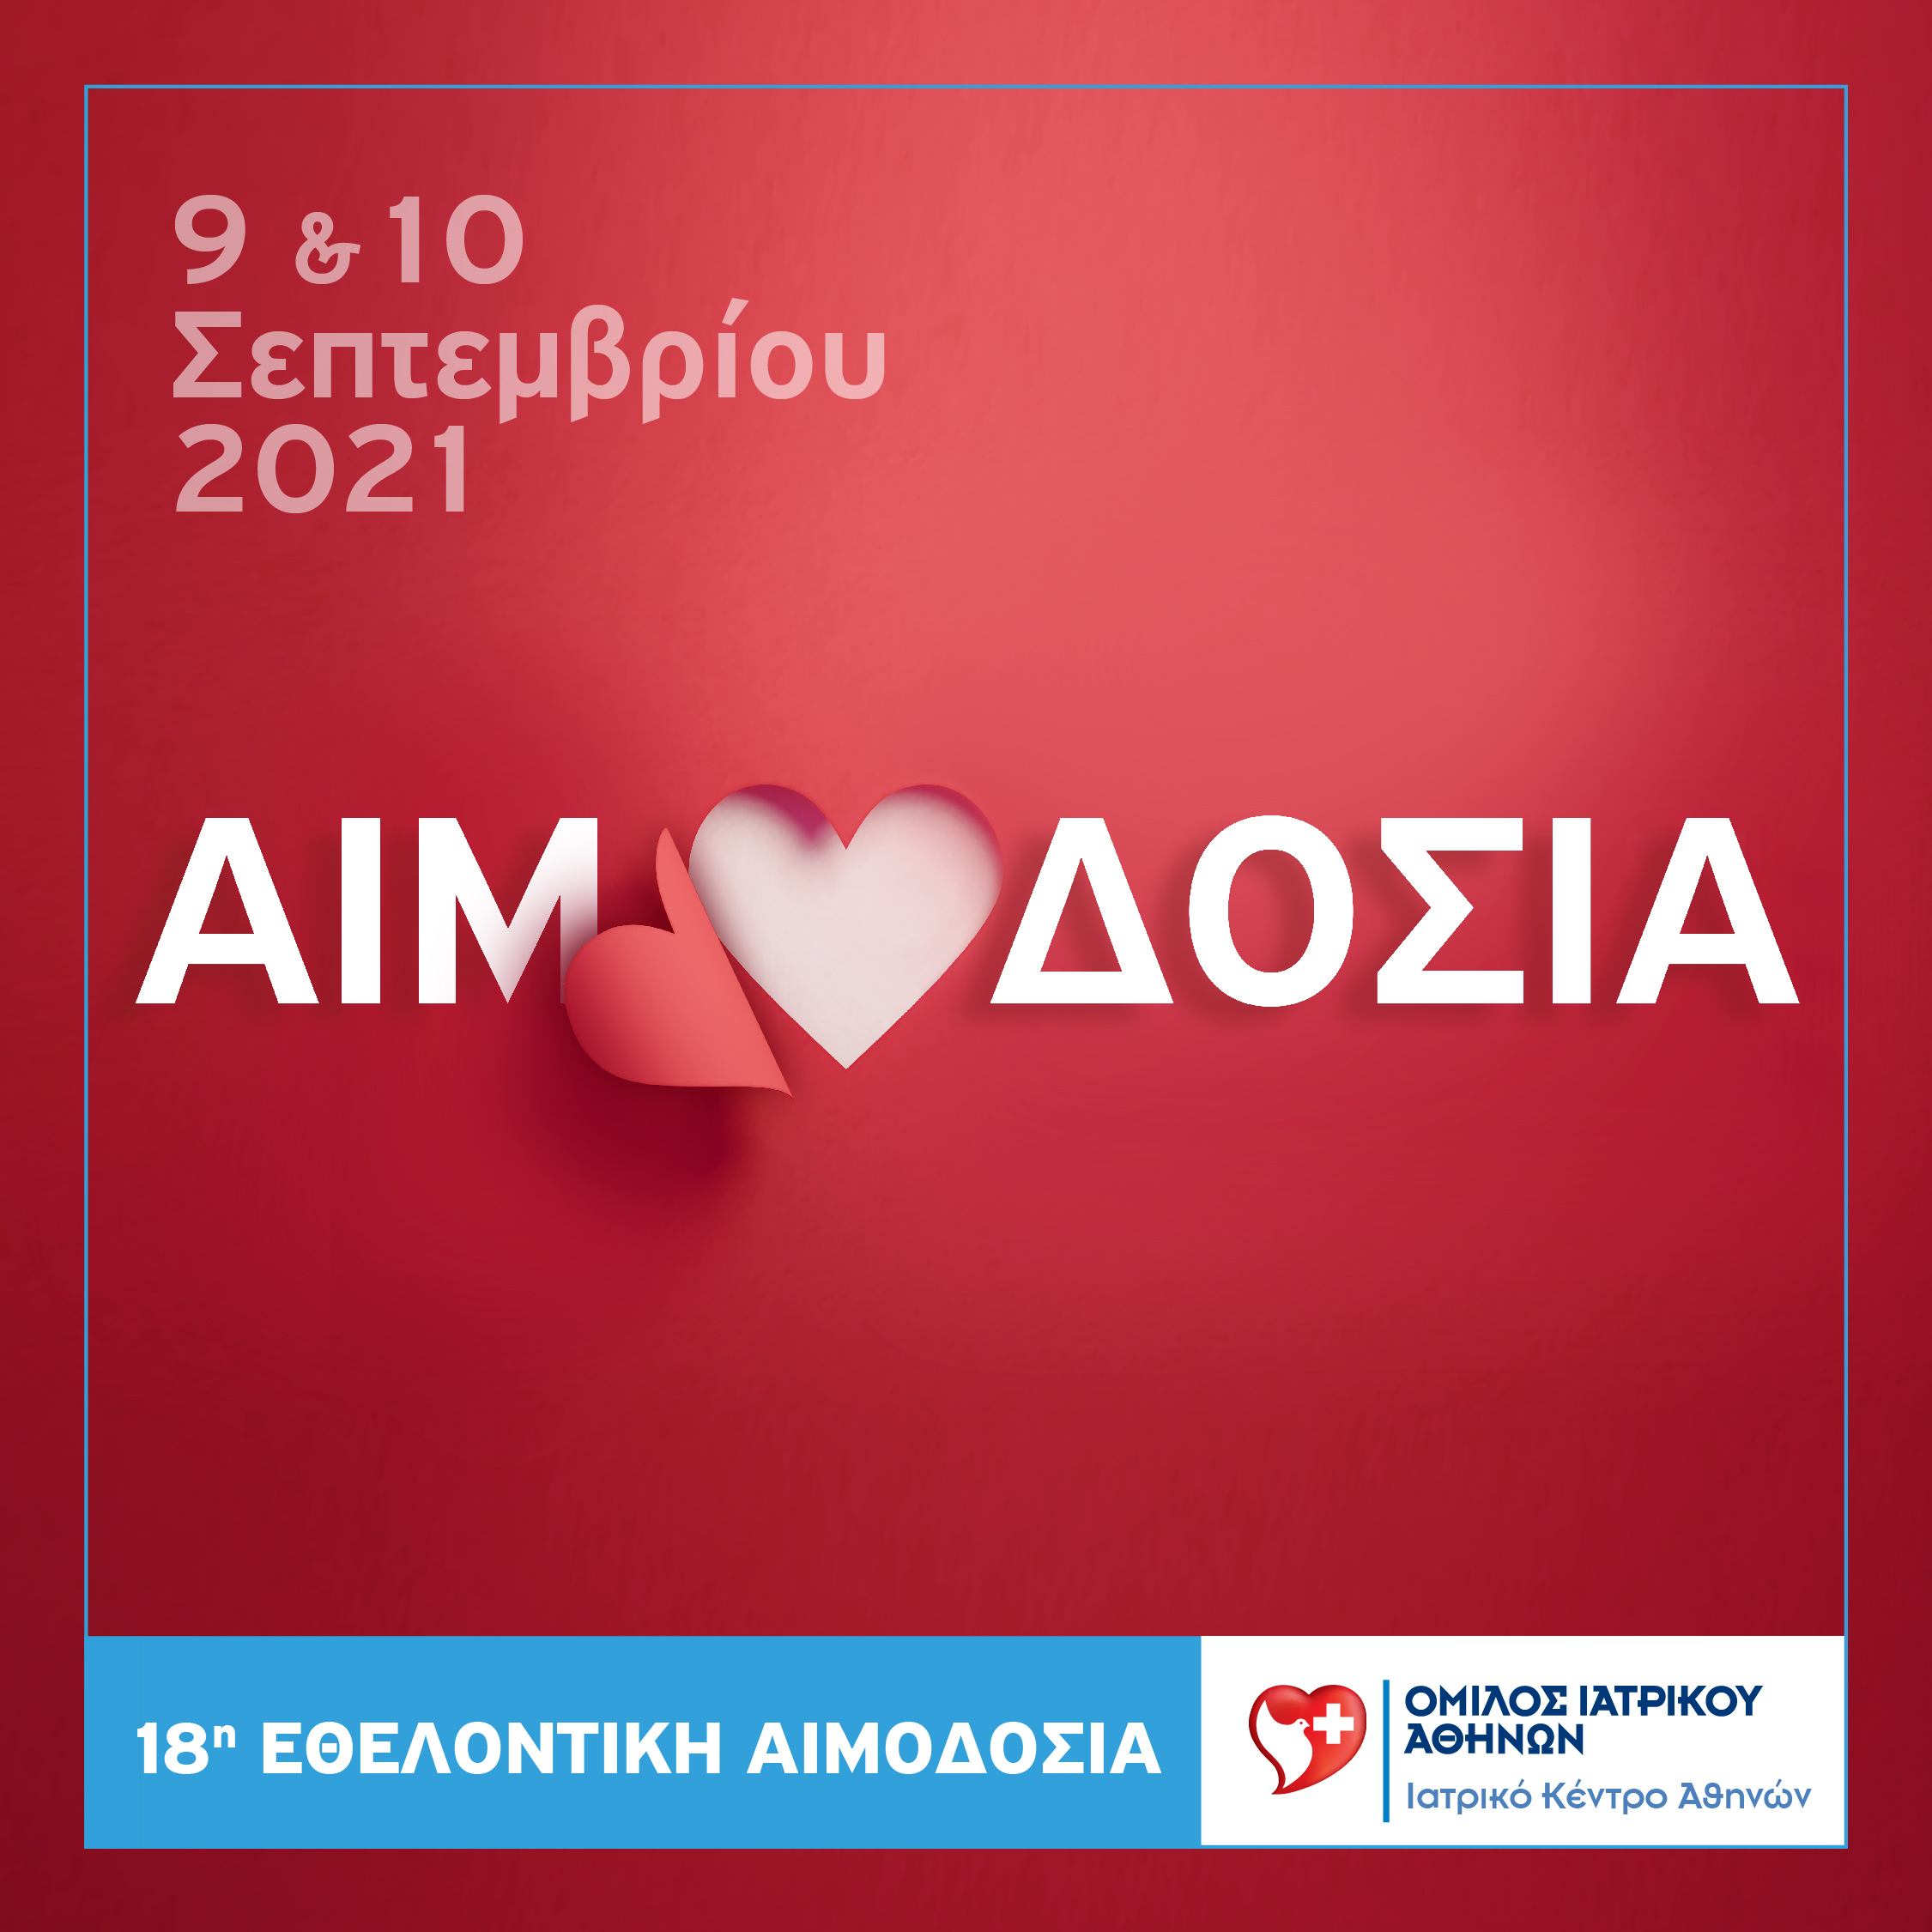 Ιατρικό Κέντρο Αθηνών: 18η Εθελοντική Αιμοδοσία εργαζομένων